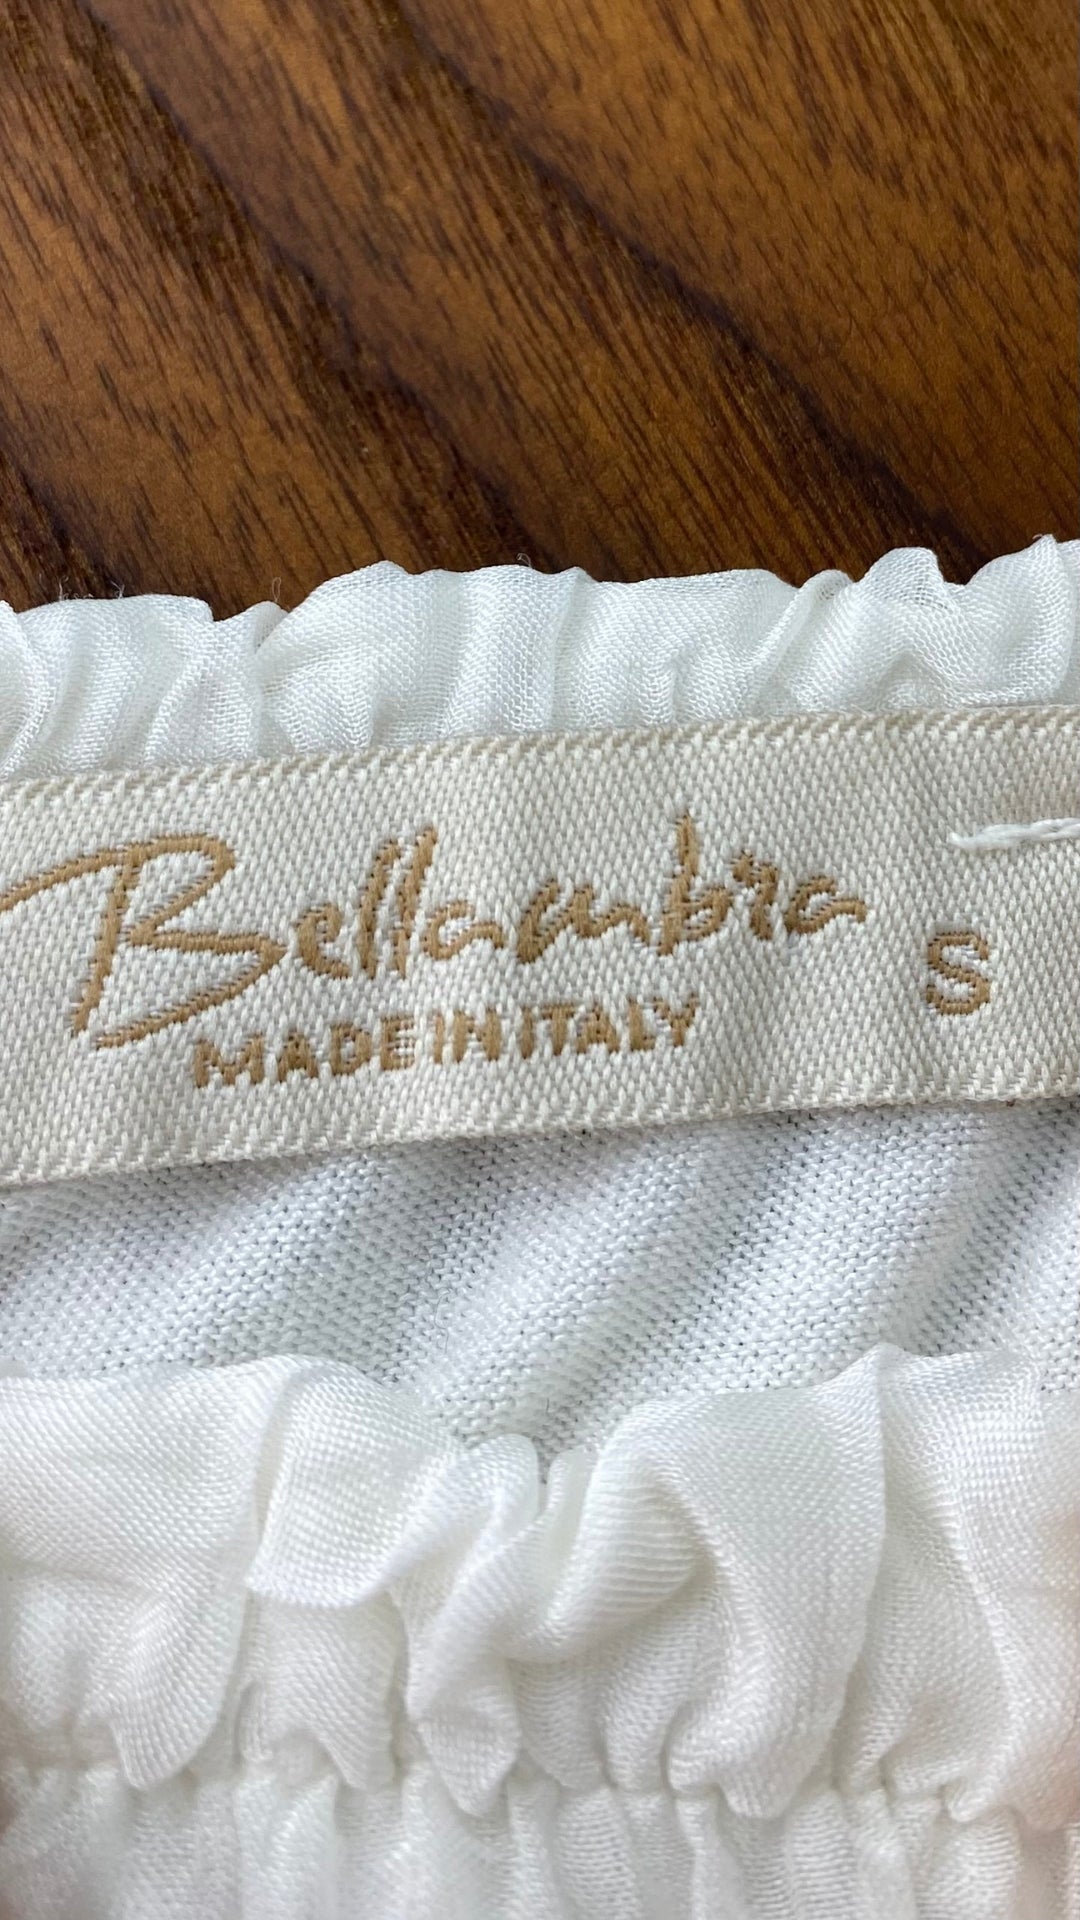 Blouse de type doll blouse vaporeuse de couleur crème en mélange de soie et viscose. Marque Bellaambra, taille small. Vue de l'étiquette de marque et taille.